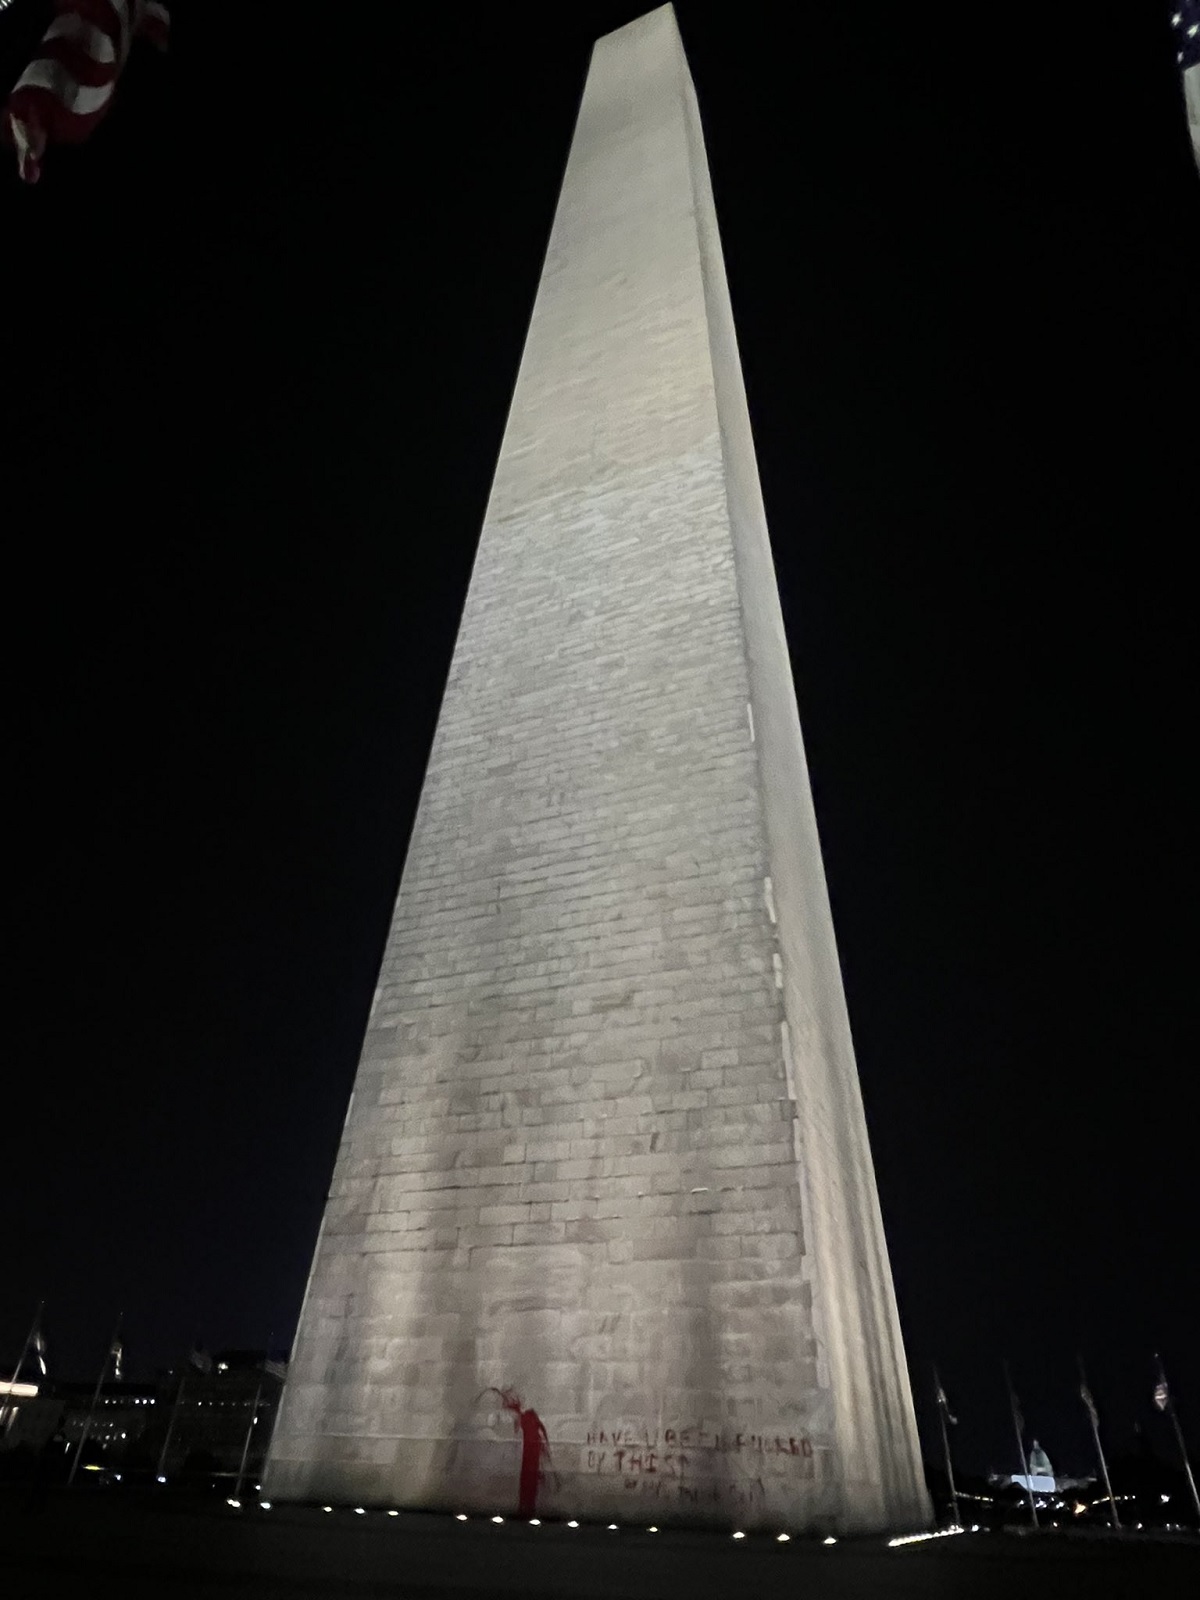 Monumento a Washington, famoso obelisco da capital dos EUA, é vandalizado com tinta vermelha